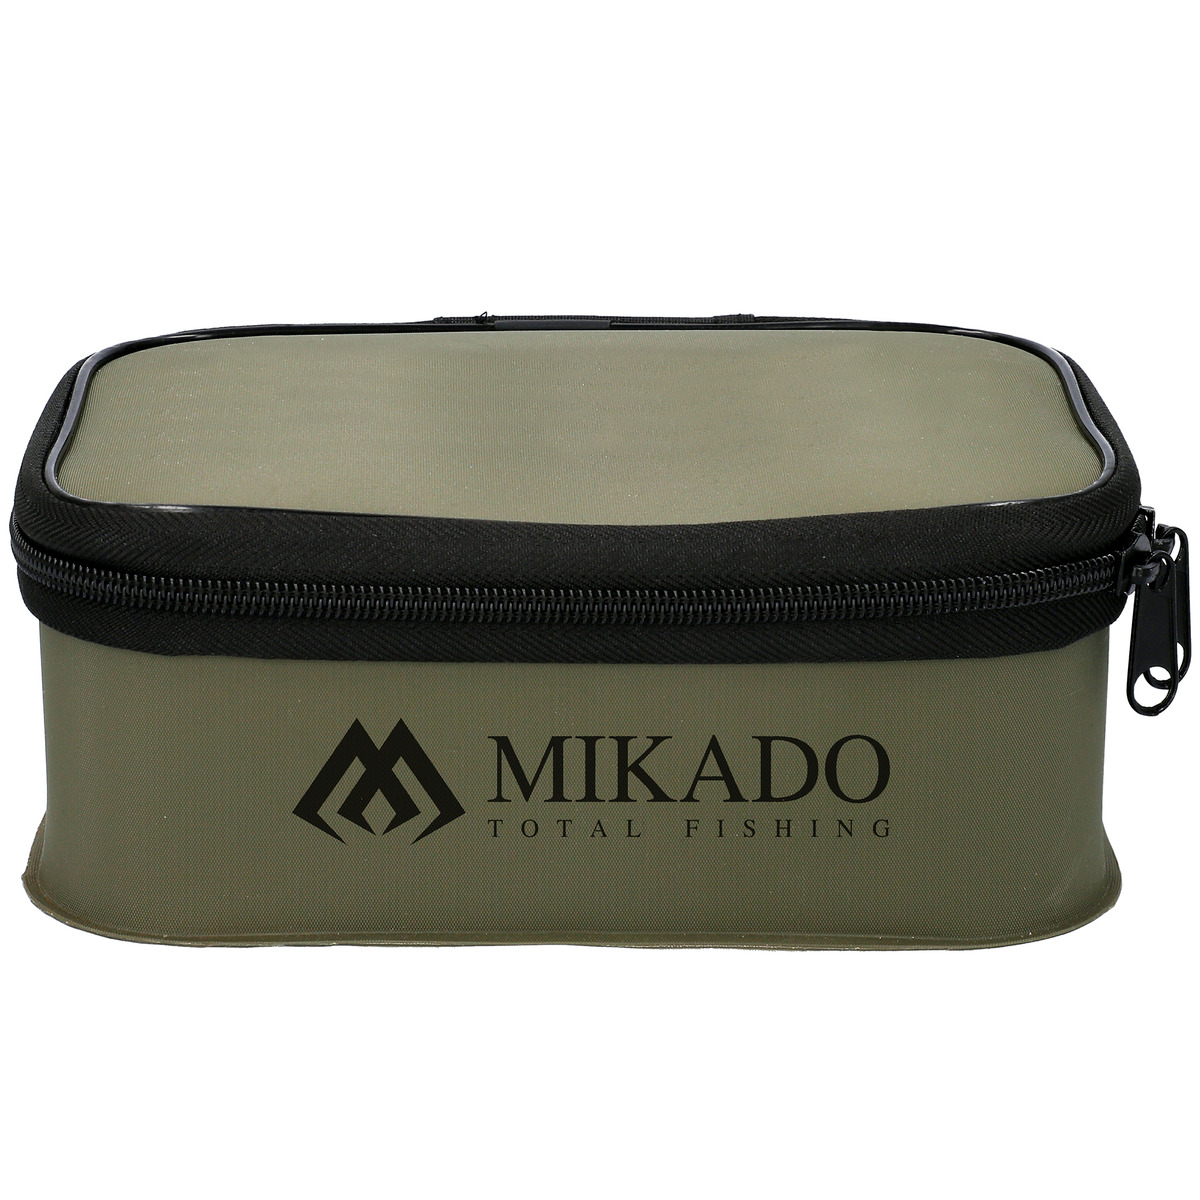 Mikado Eva - size XL (27x16x9 cm)